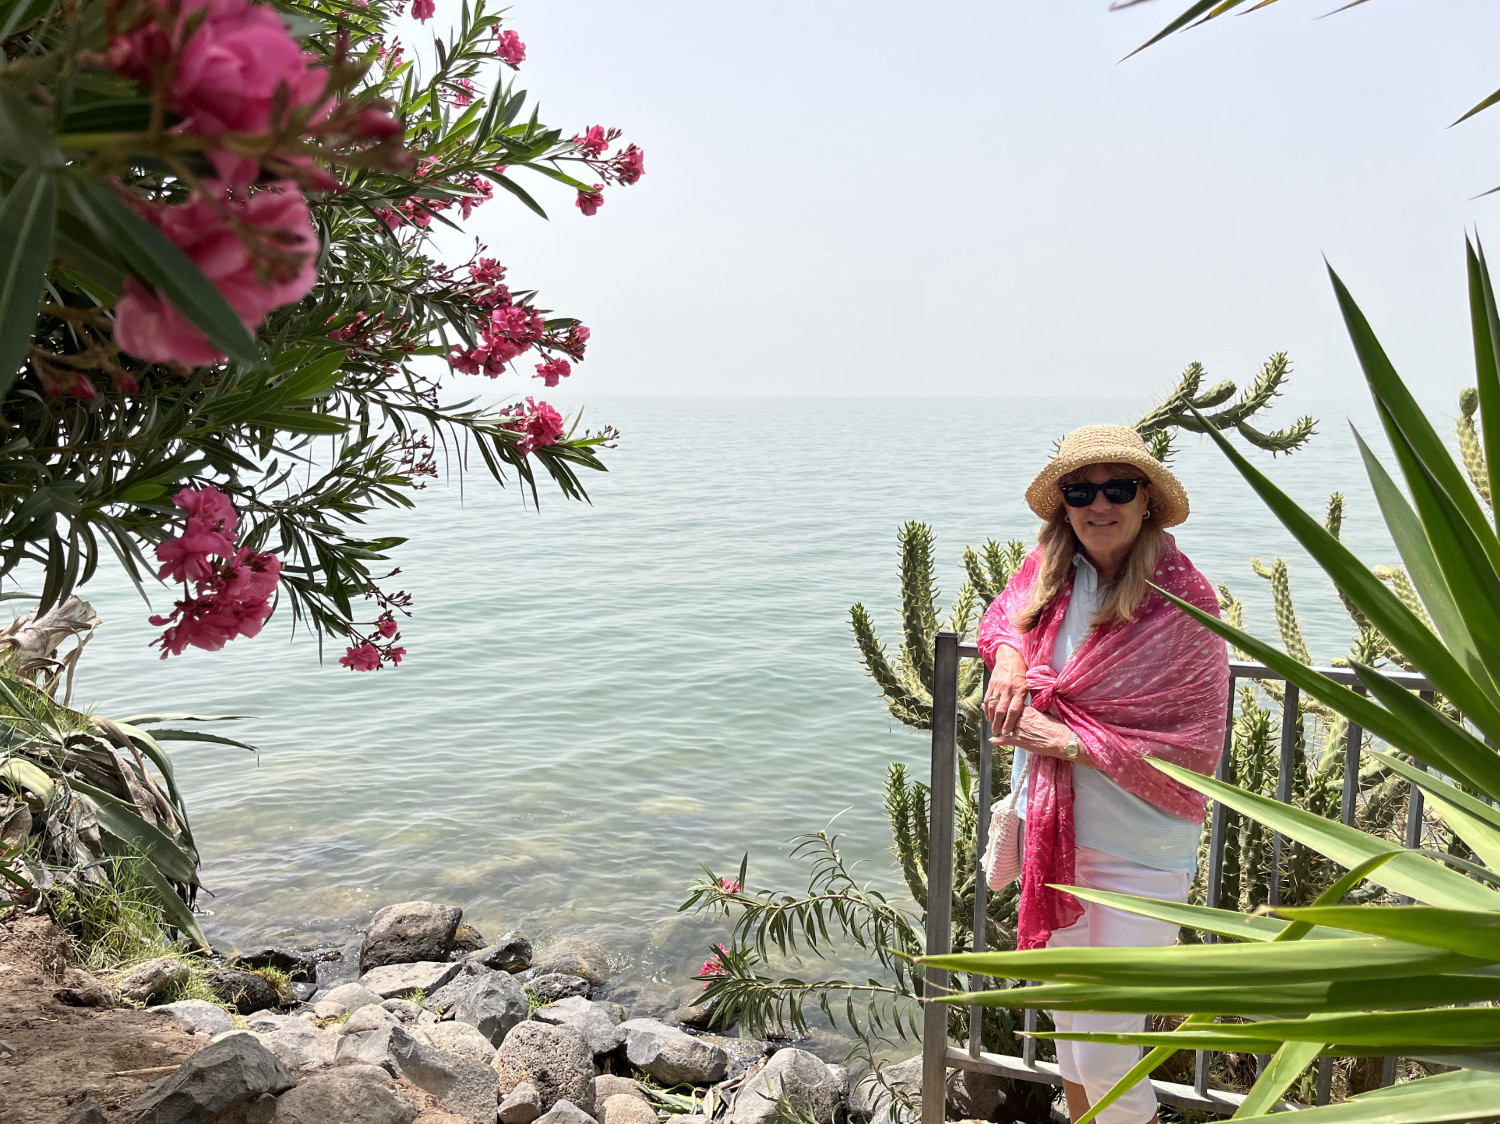 Kathy at Sea of Galilee